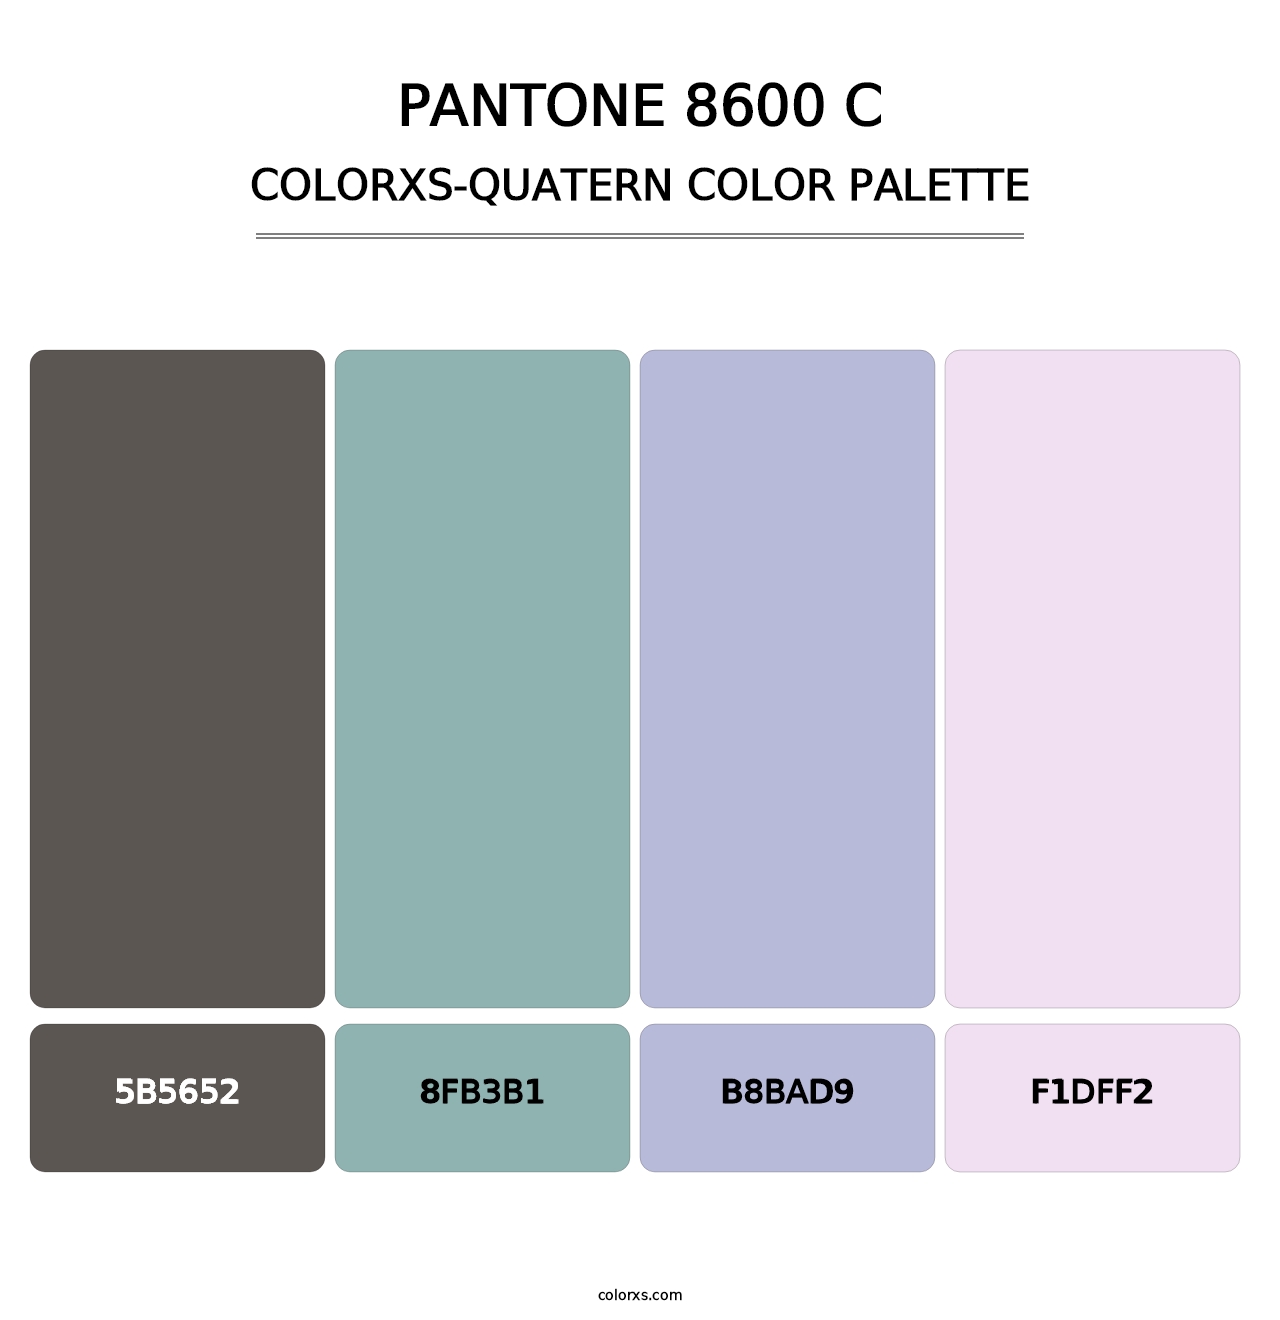 PANTONE 8600 C - Colorxs Quatern Palette